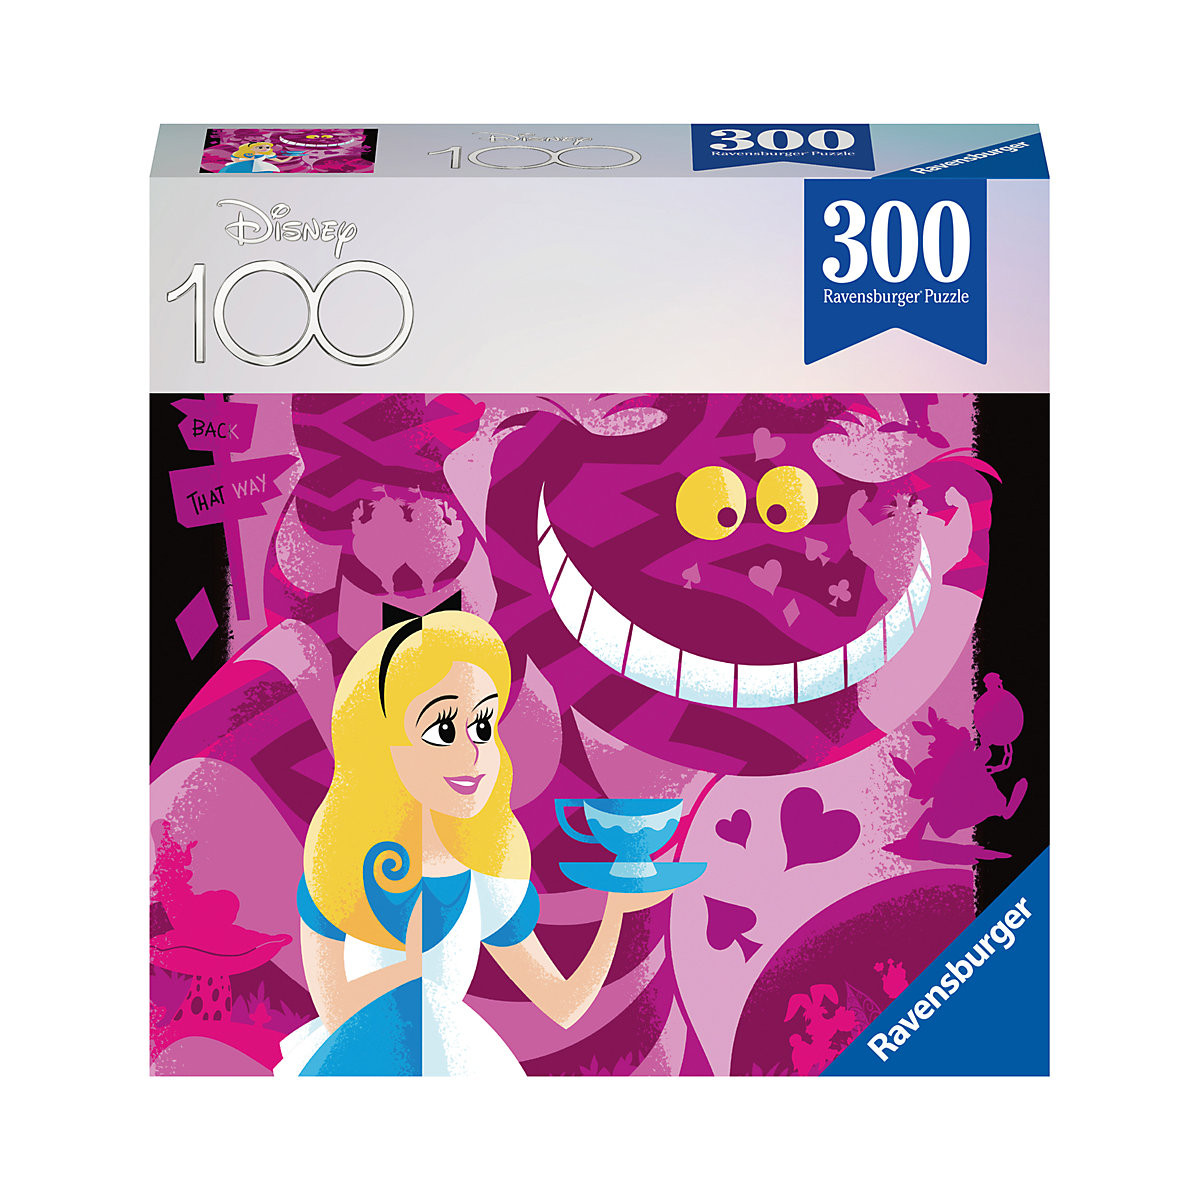 Ravensburger Puzzle 13374 Alice 300 Teile Disney Puzzle für Erwachsene und Kinder ab 8 Jahren